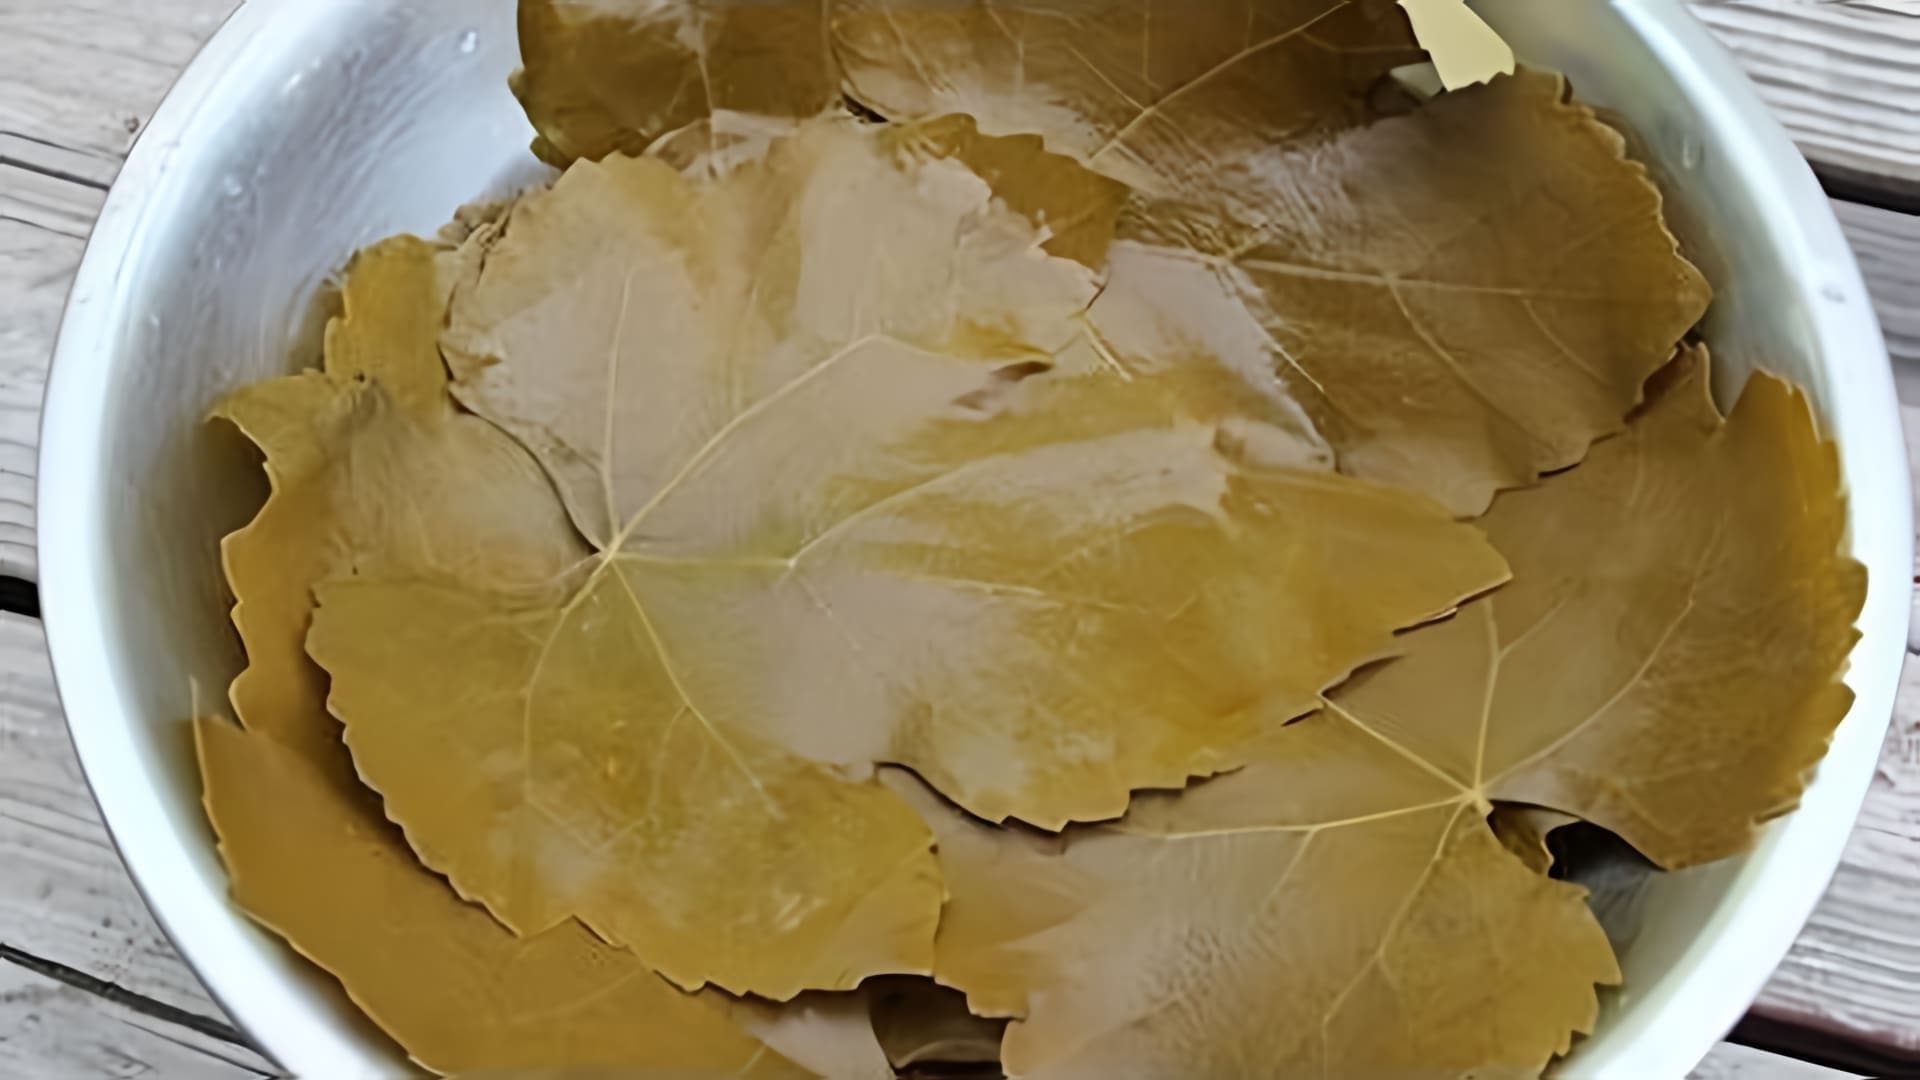 В этом видео демонстрируется процесс отваривания виноградных листьев для долмы